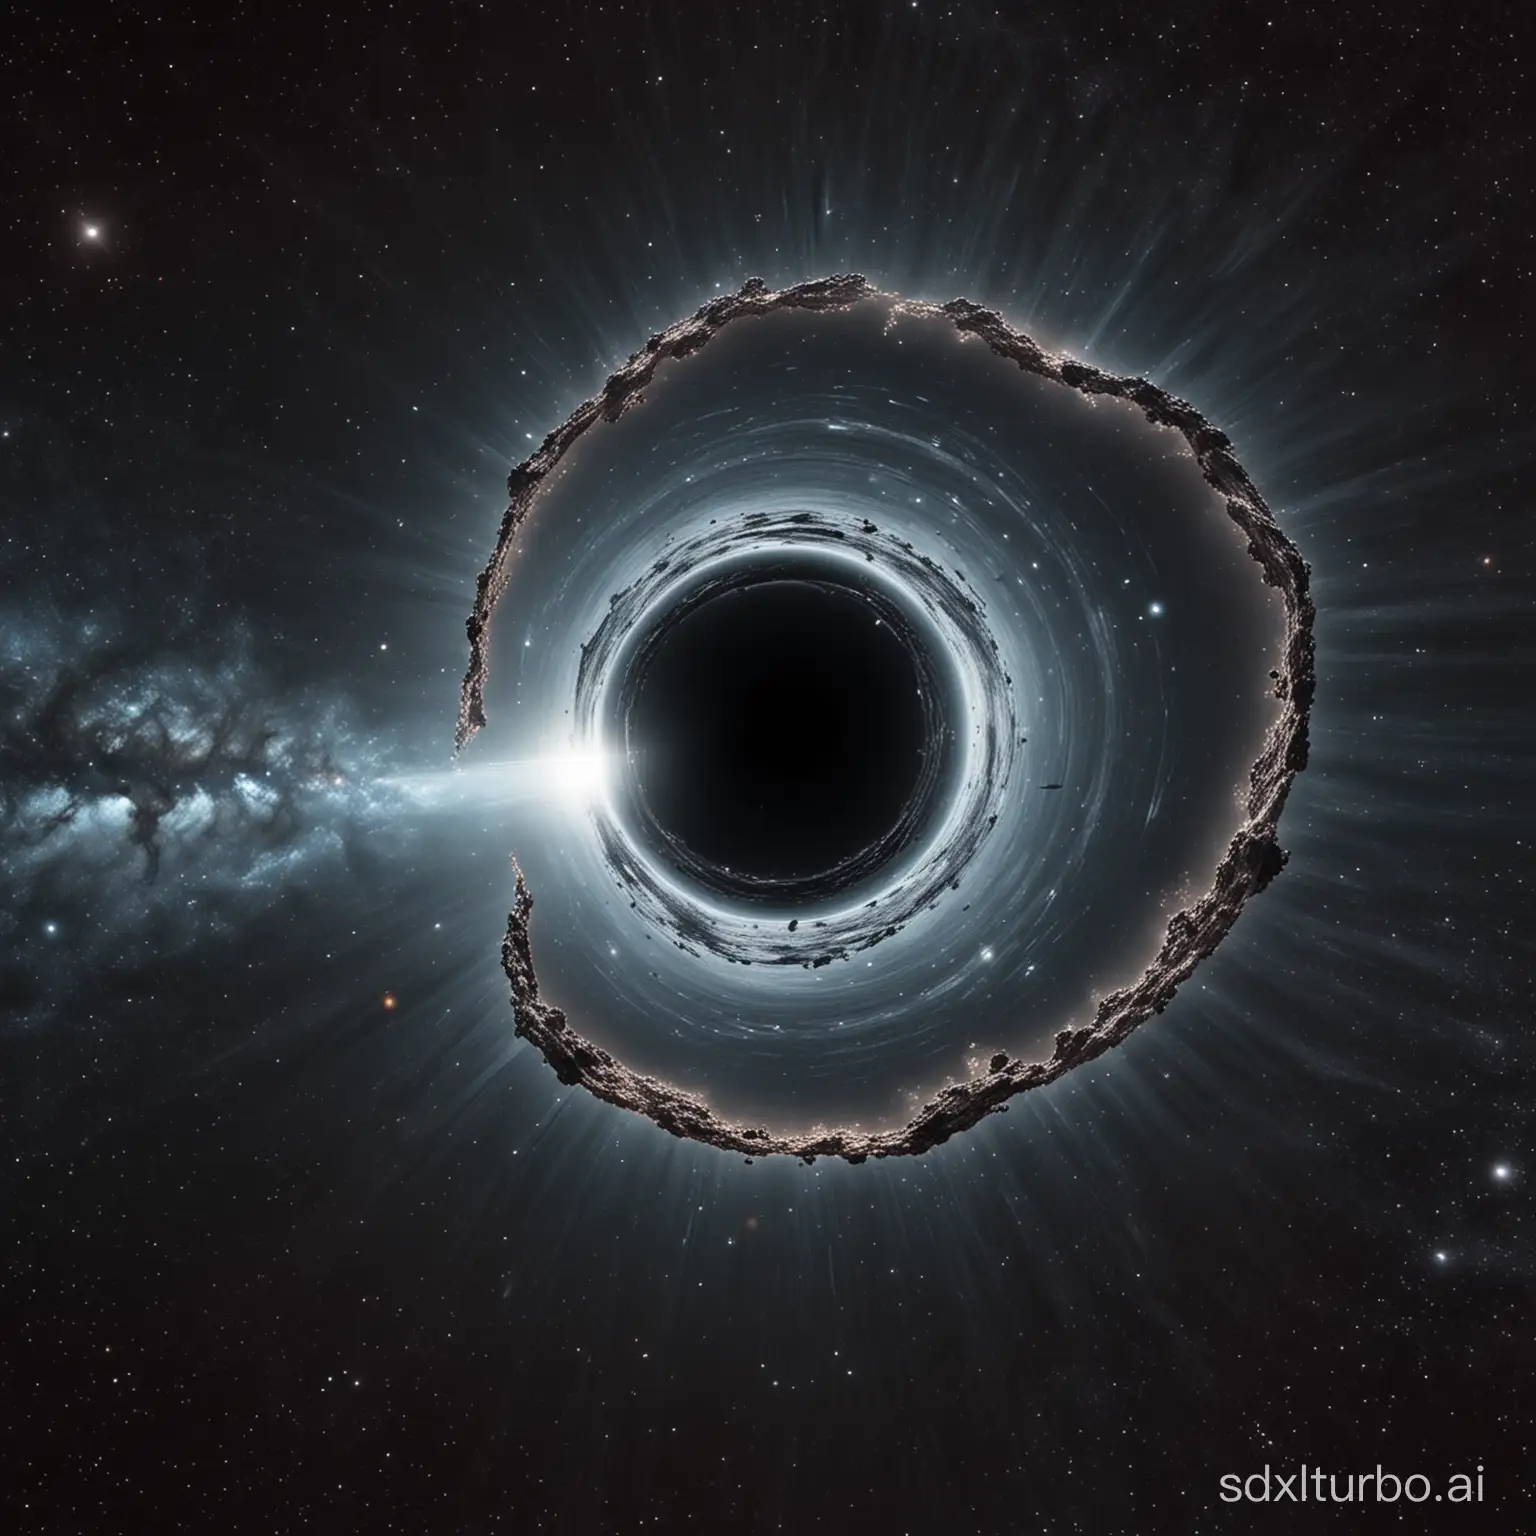 Exploring-Interstellar-Depths-Spaceship-Approaching-a-Black-Hole